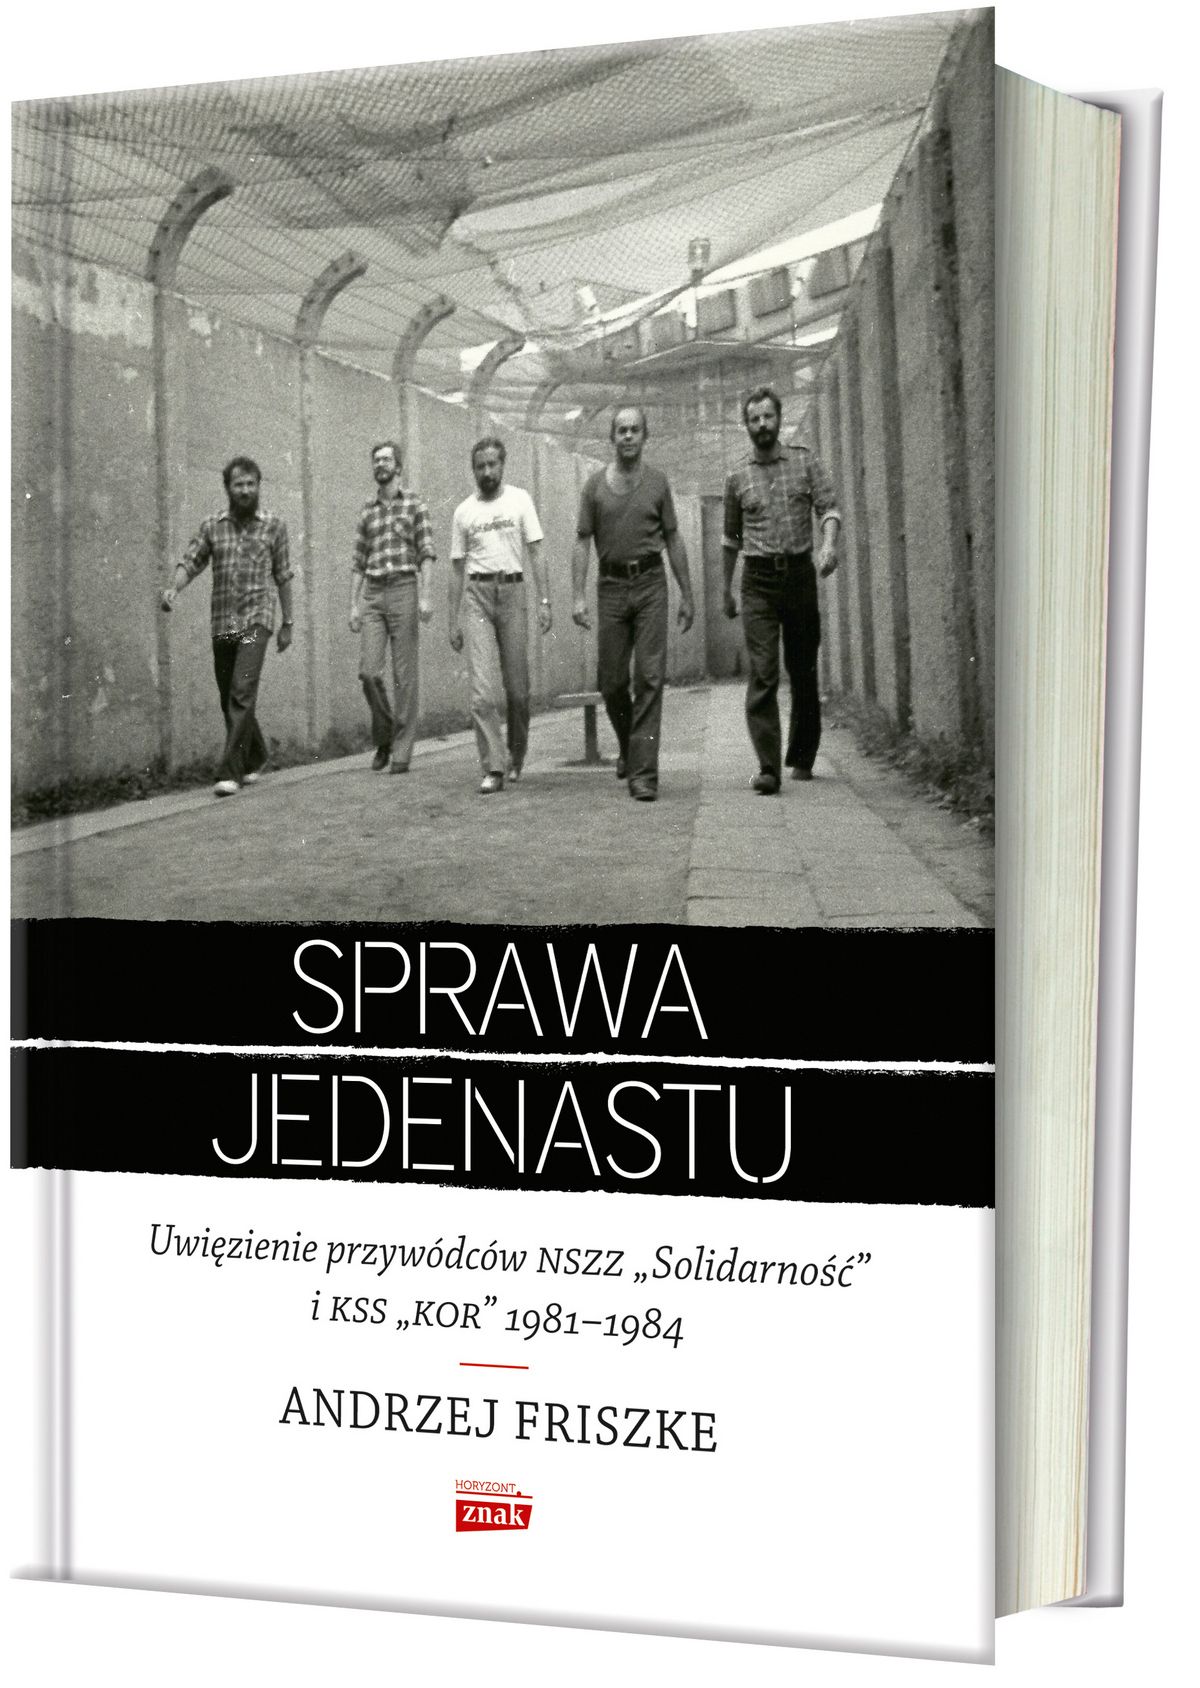 Inspiracją do powstania artykułu była najnowsza książka prof. Andrzej Friszke "Sprawa jedenastu. Uwięzienie przywódców NSZZ "Solidarność" i KSS "KOR" 1981-1984" (Znak Horyzont 2018).